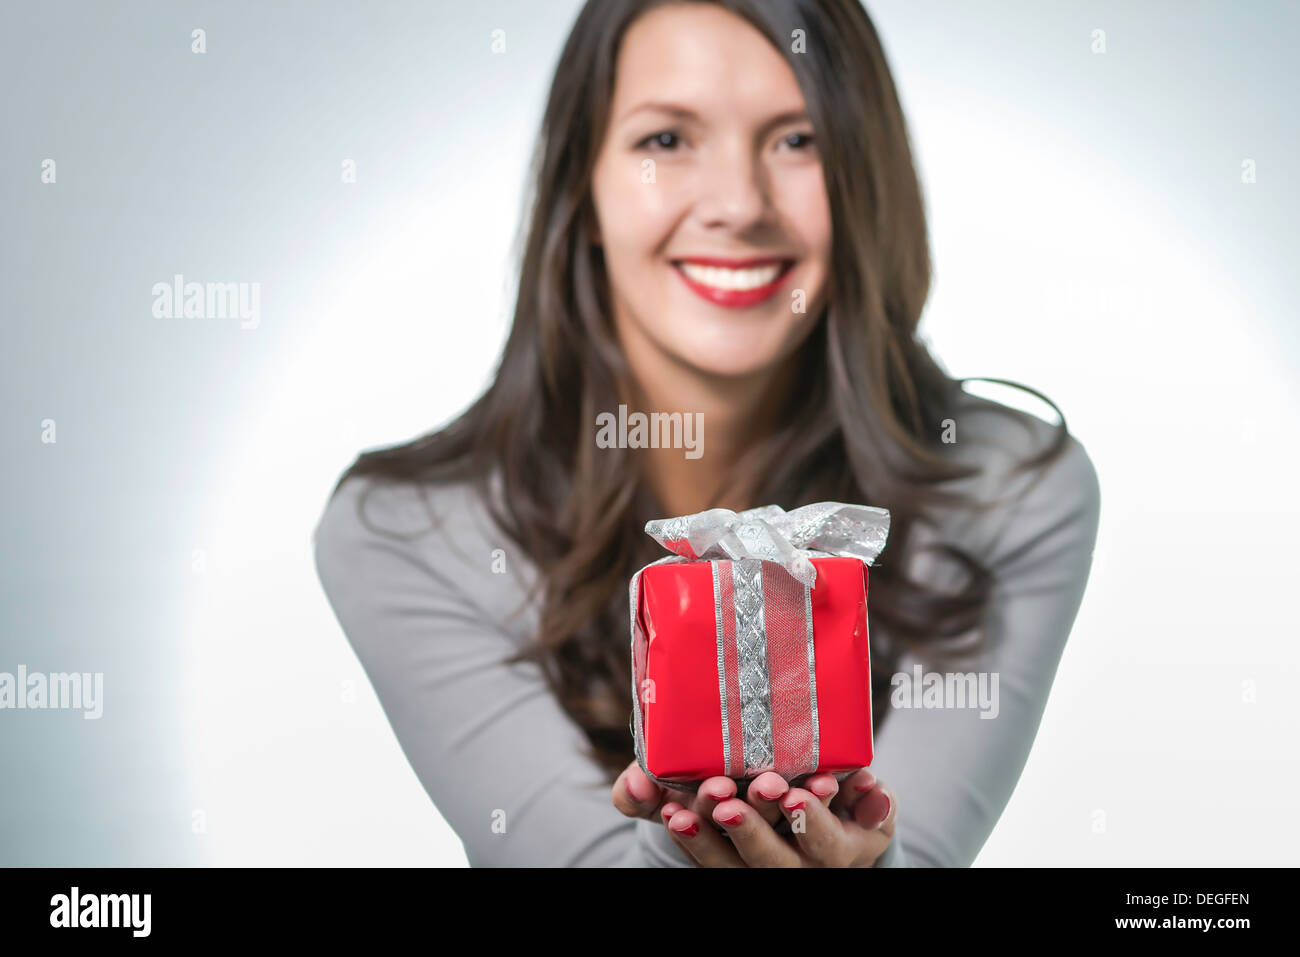 Hübsche junge Frau mit lange brünette Haare und eine schöne sanfte Lächeln hielt einen bunten roten Geschenk für einen lieben Menschen Stockfoto